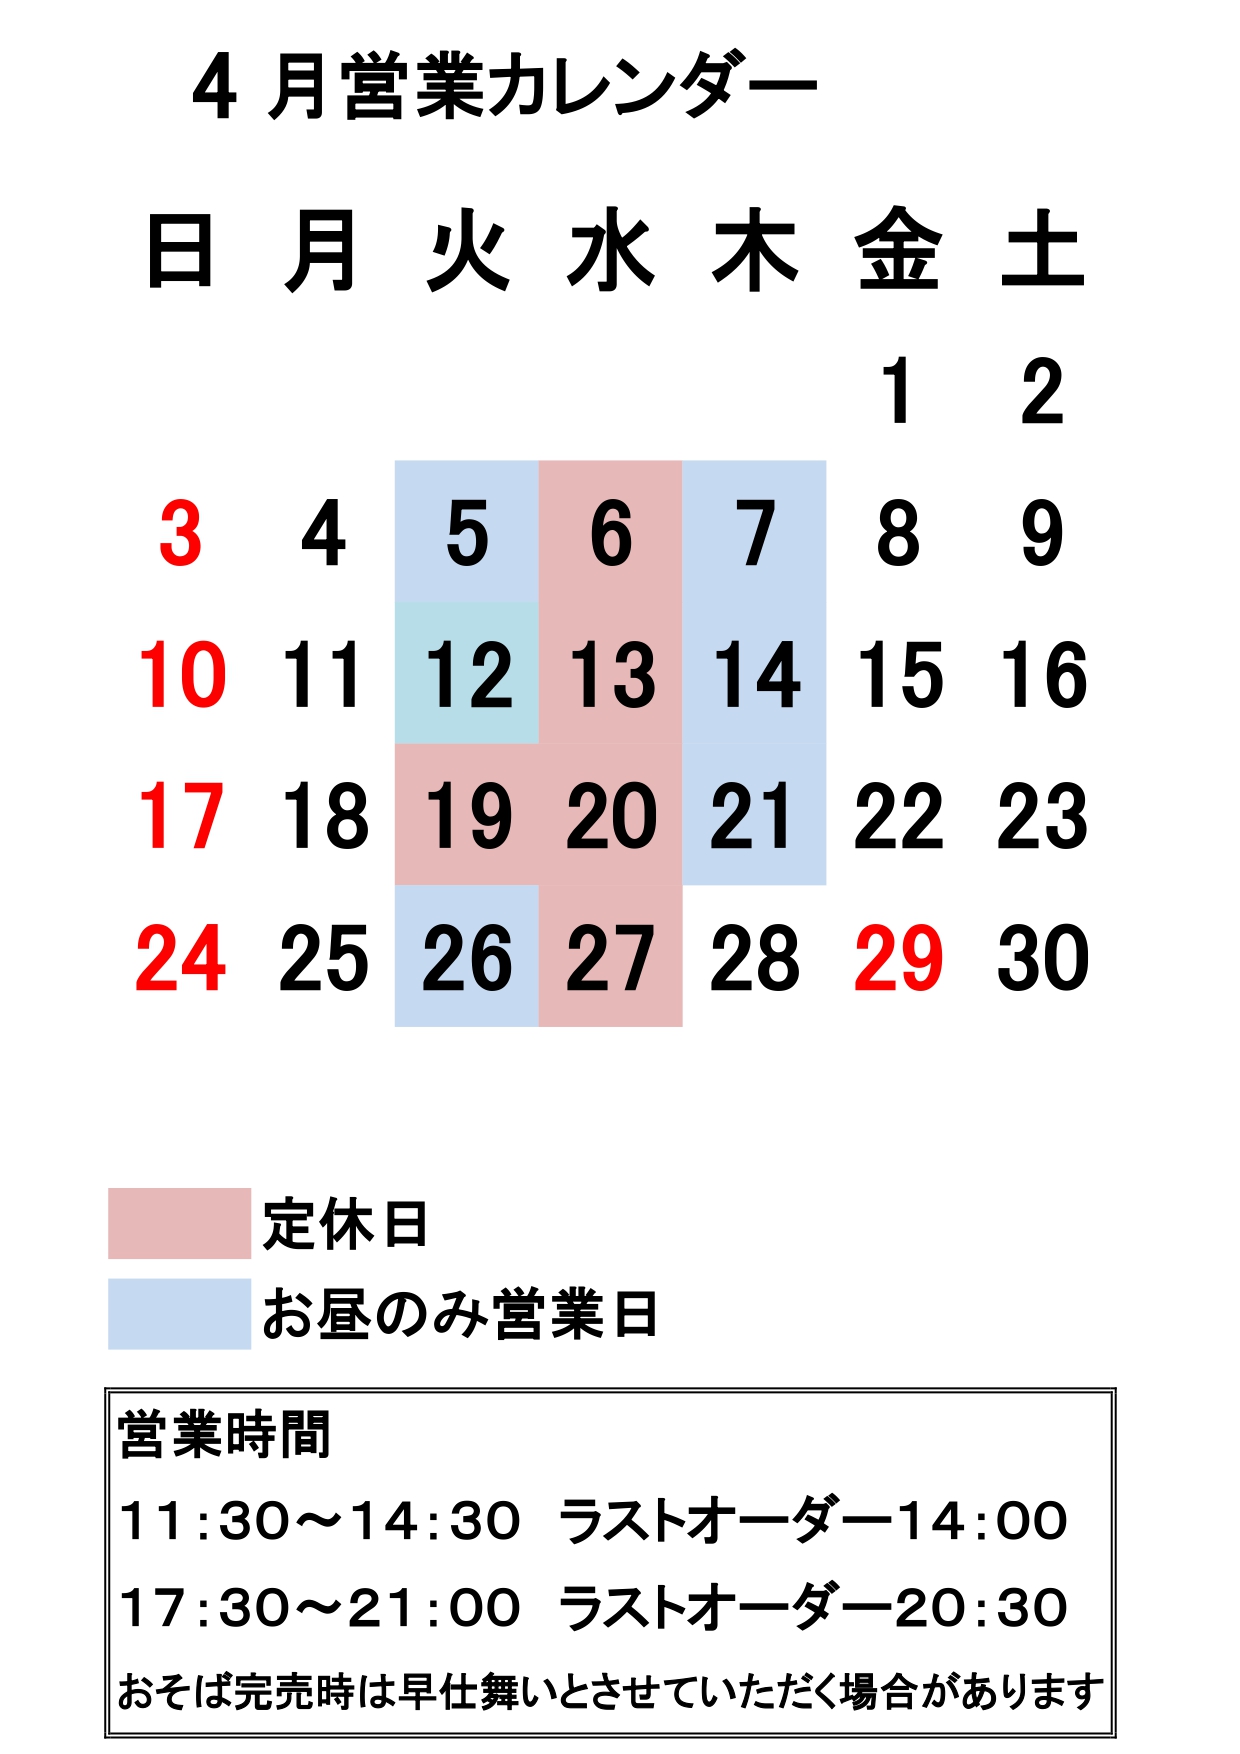 営業カレンダー_page-0001 (4).jpg